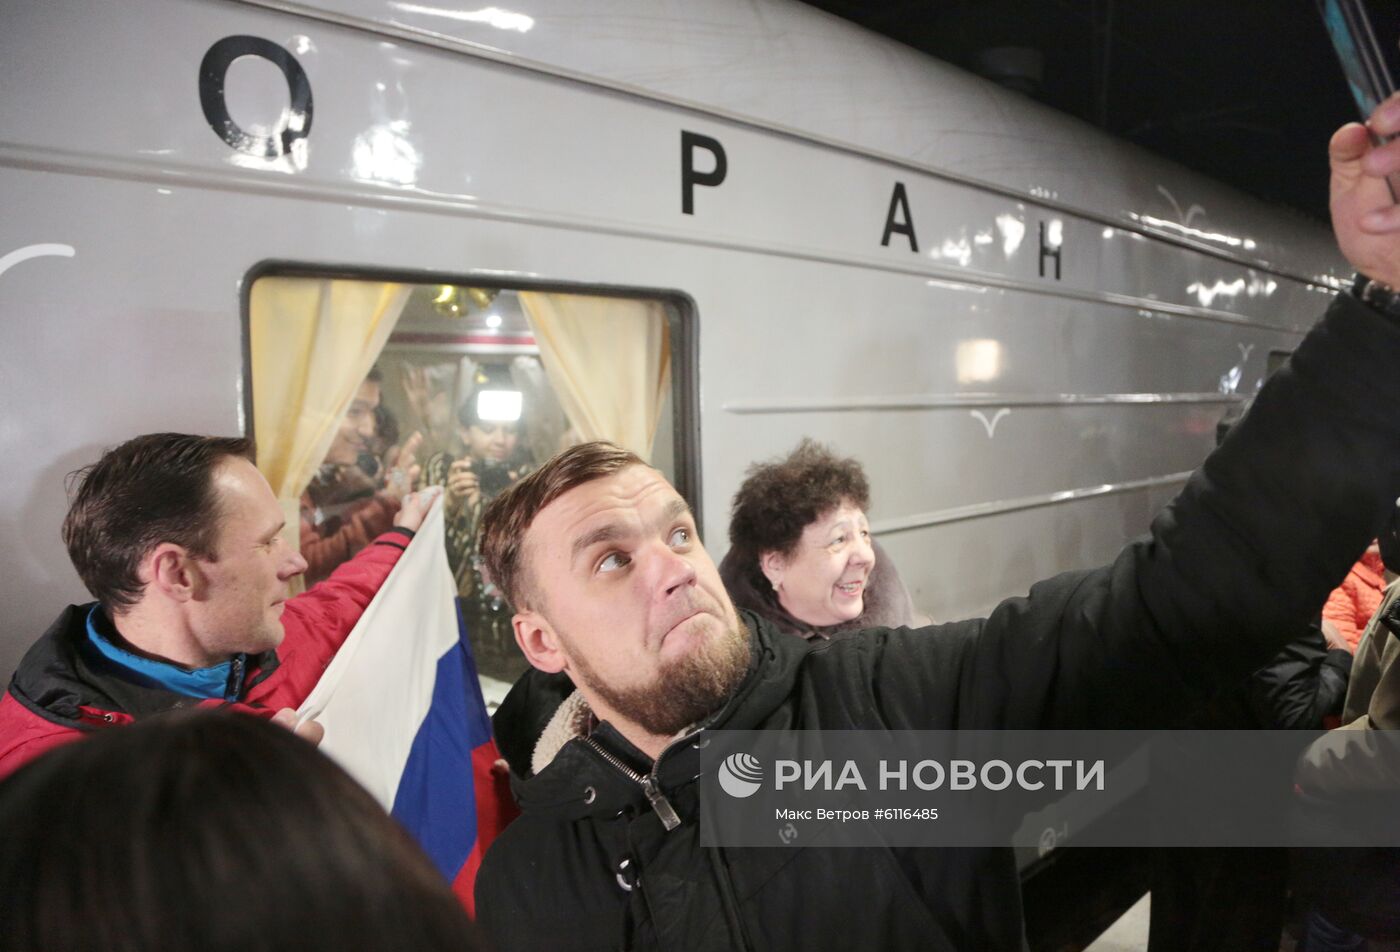 Прибытие пассажирского поезда  "Таврия" в Крым